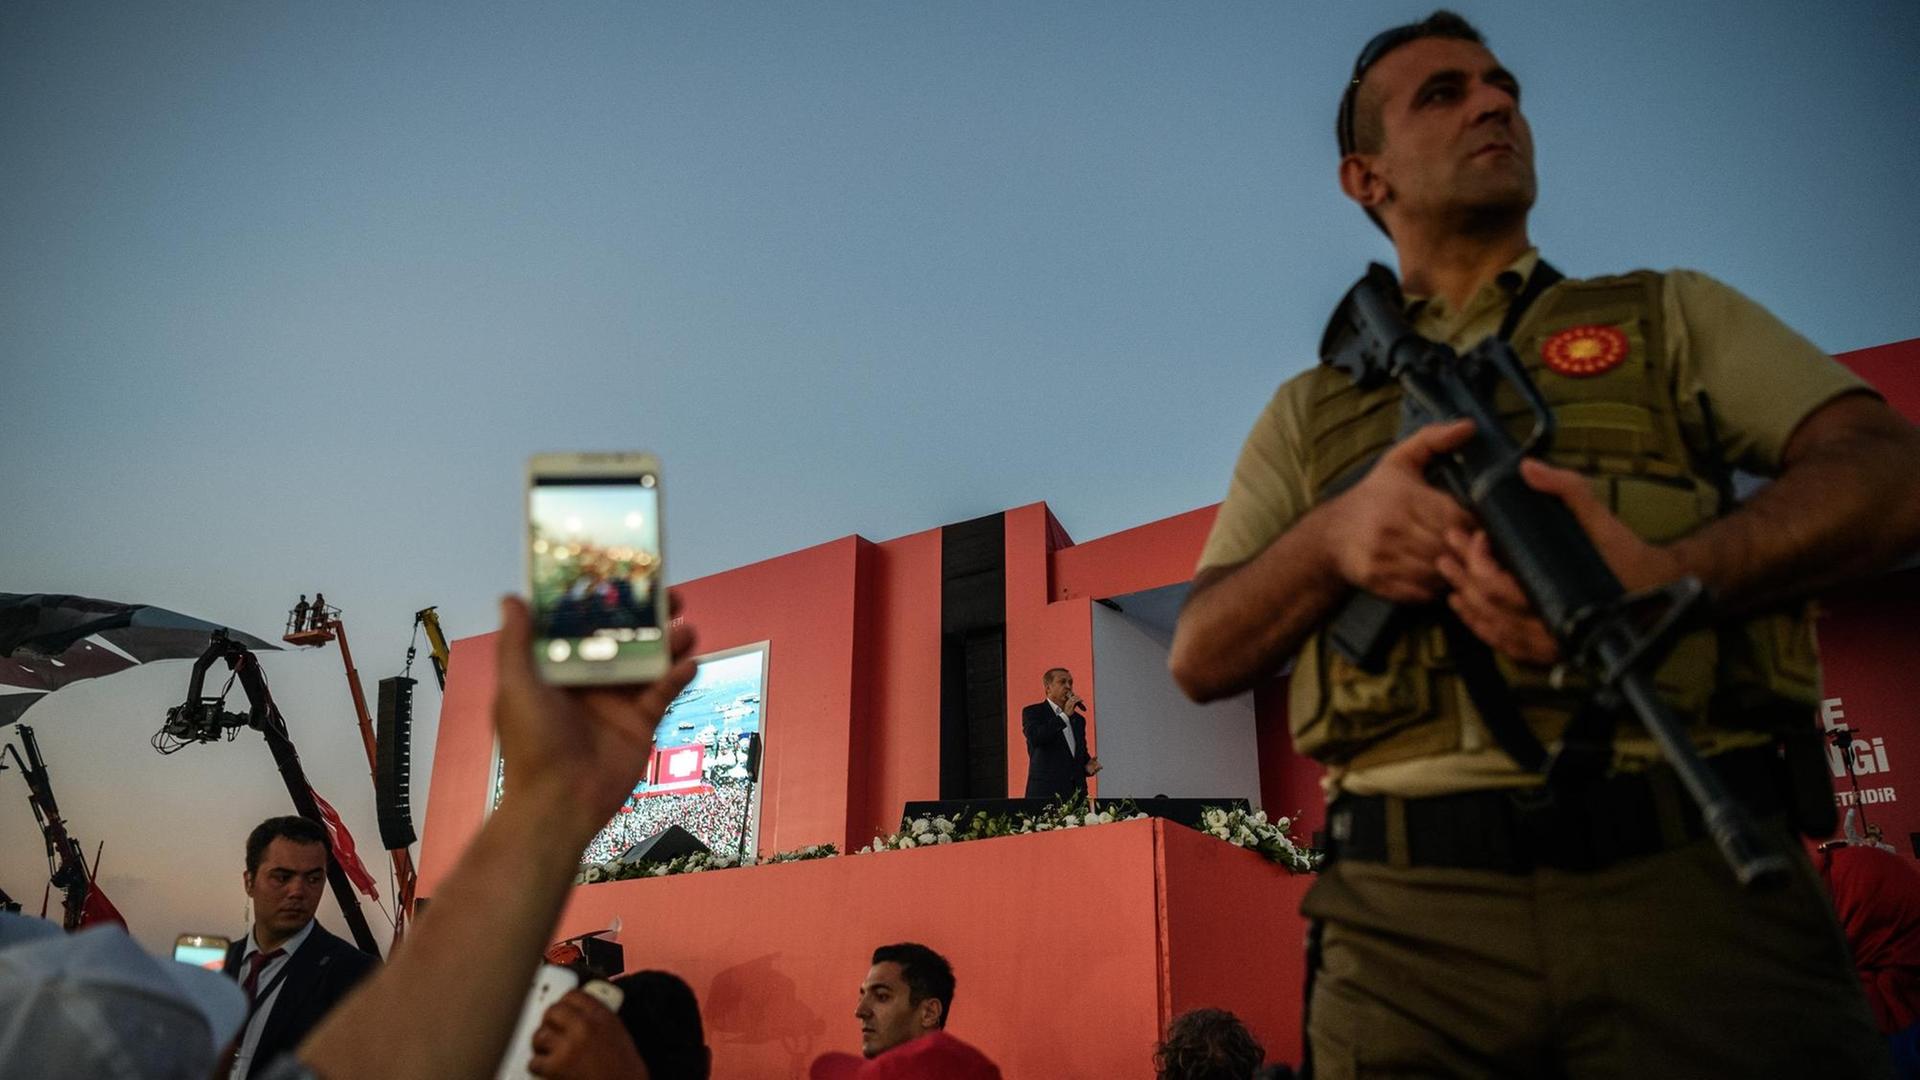 Aufnahme aus dem Publikum. Auf einer Bühne steht der türkische Präsident Recep Tayyip Erdogan. Ein Sicherheitsoffizier überwacht die Zuschauer.